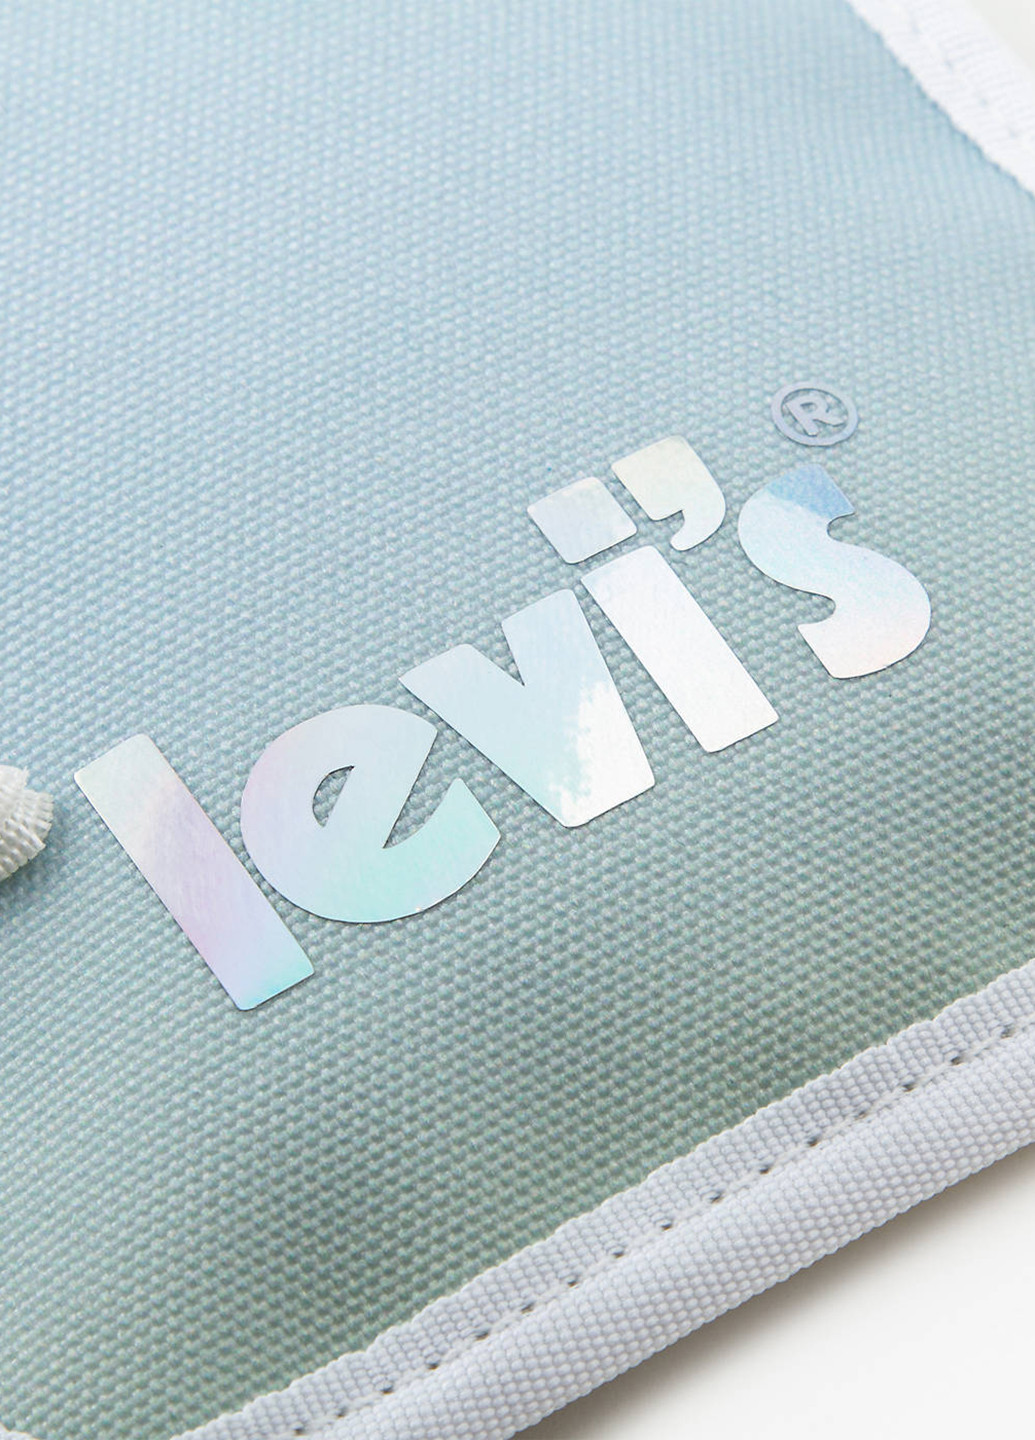 Сумка Levi's сумка-гаманець логотип блакитна кежуал